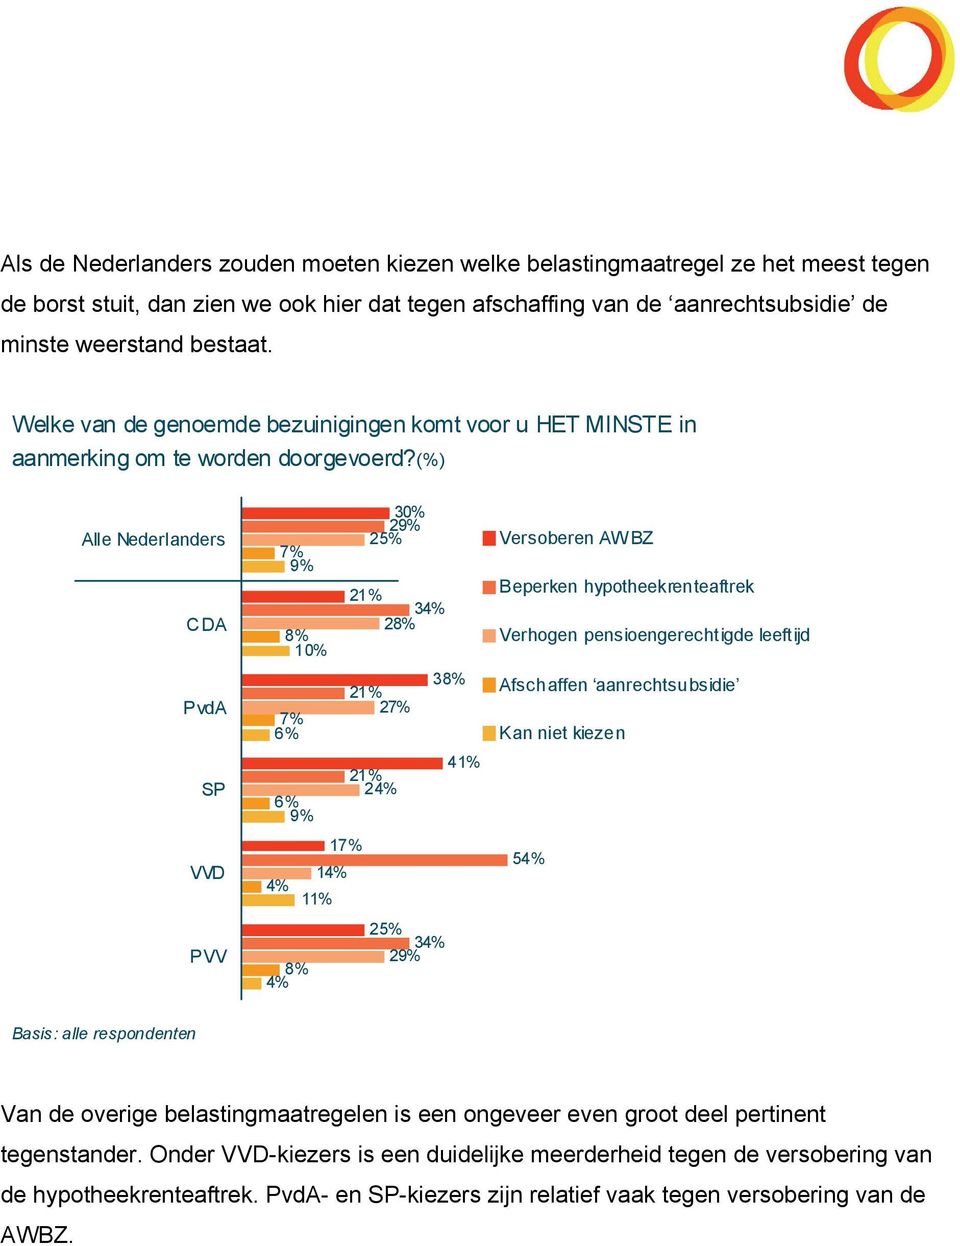 (%) Alle Nederlanders CDA PvdA SP VVD PVV 7% 10% 7% 30% 2 25% 34% 2 3 27% 41% 24% 17% 14% 4% 25% 34% 2 4% Versoberen AW BZ Beperken hypotheekrenteaftrek Verhogen pensioengerechtigde leeftijd